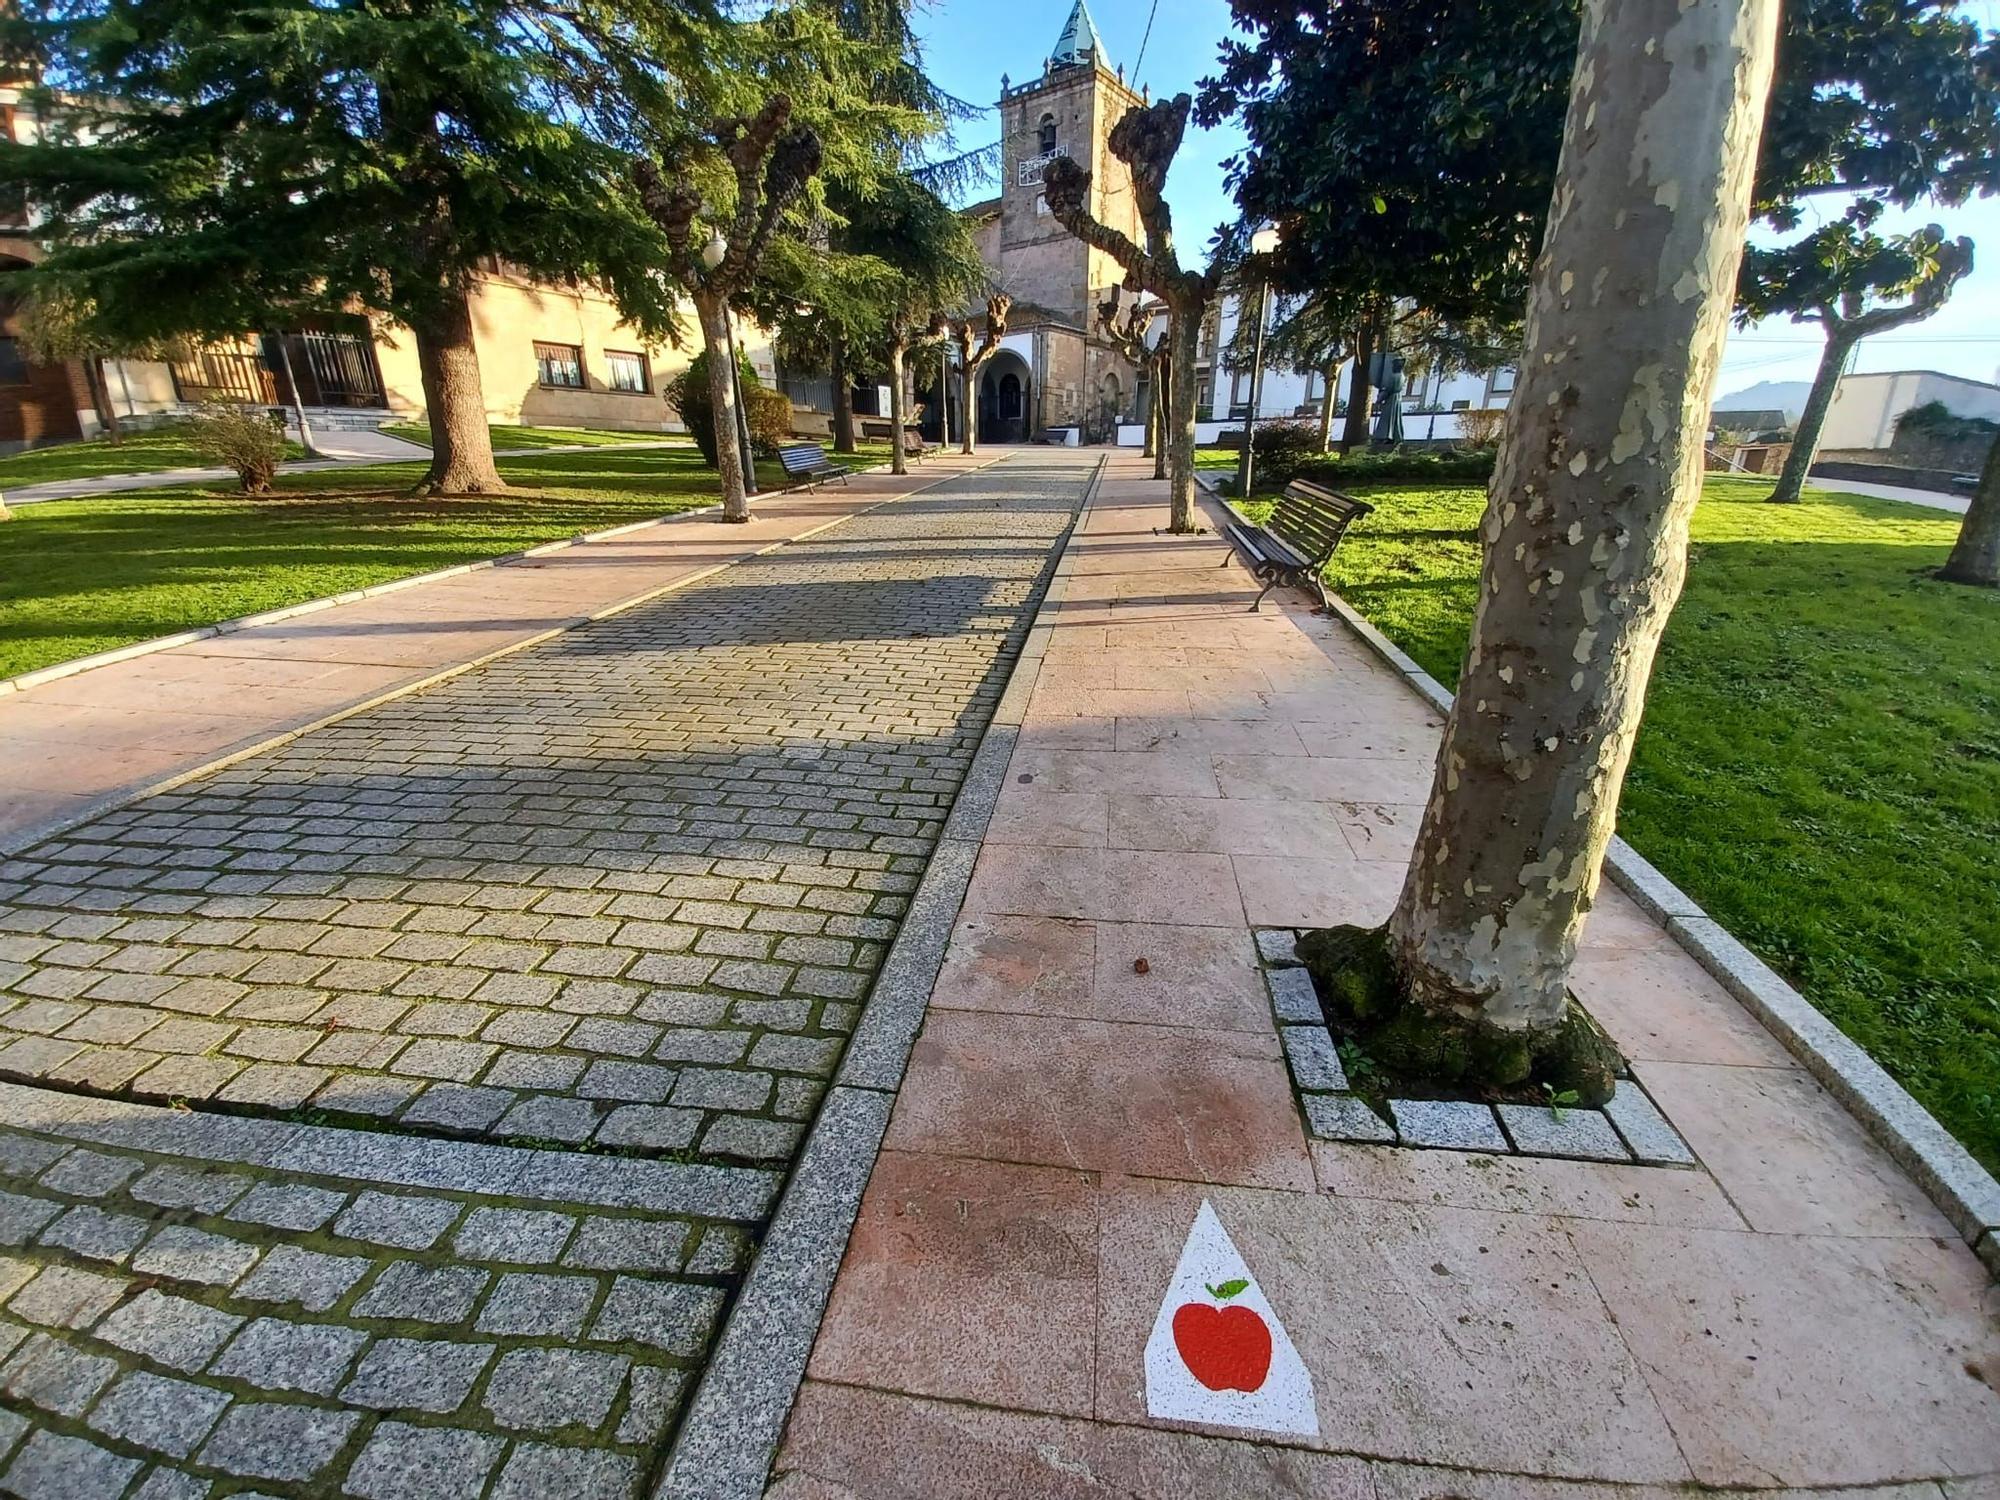 Una de las manzanas sobre el suelo que indica camino y dirección en un punto de la ruta, en concreto hacia la iglesia de Santa María.